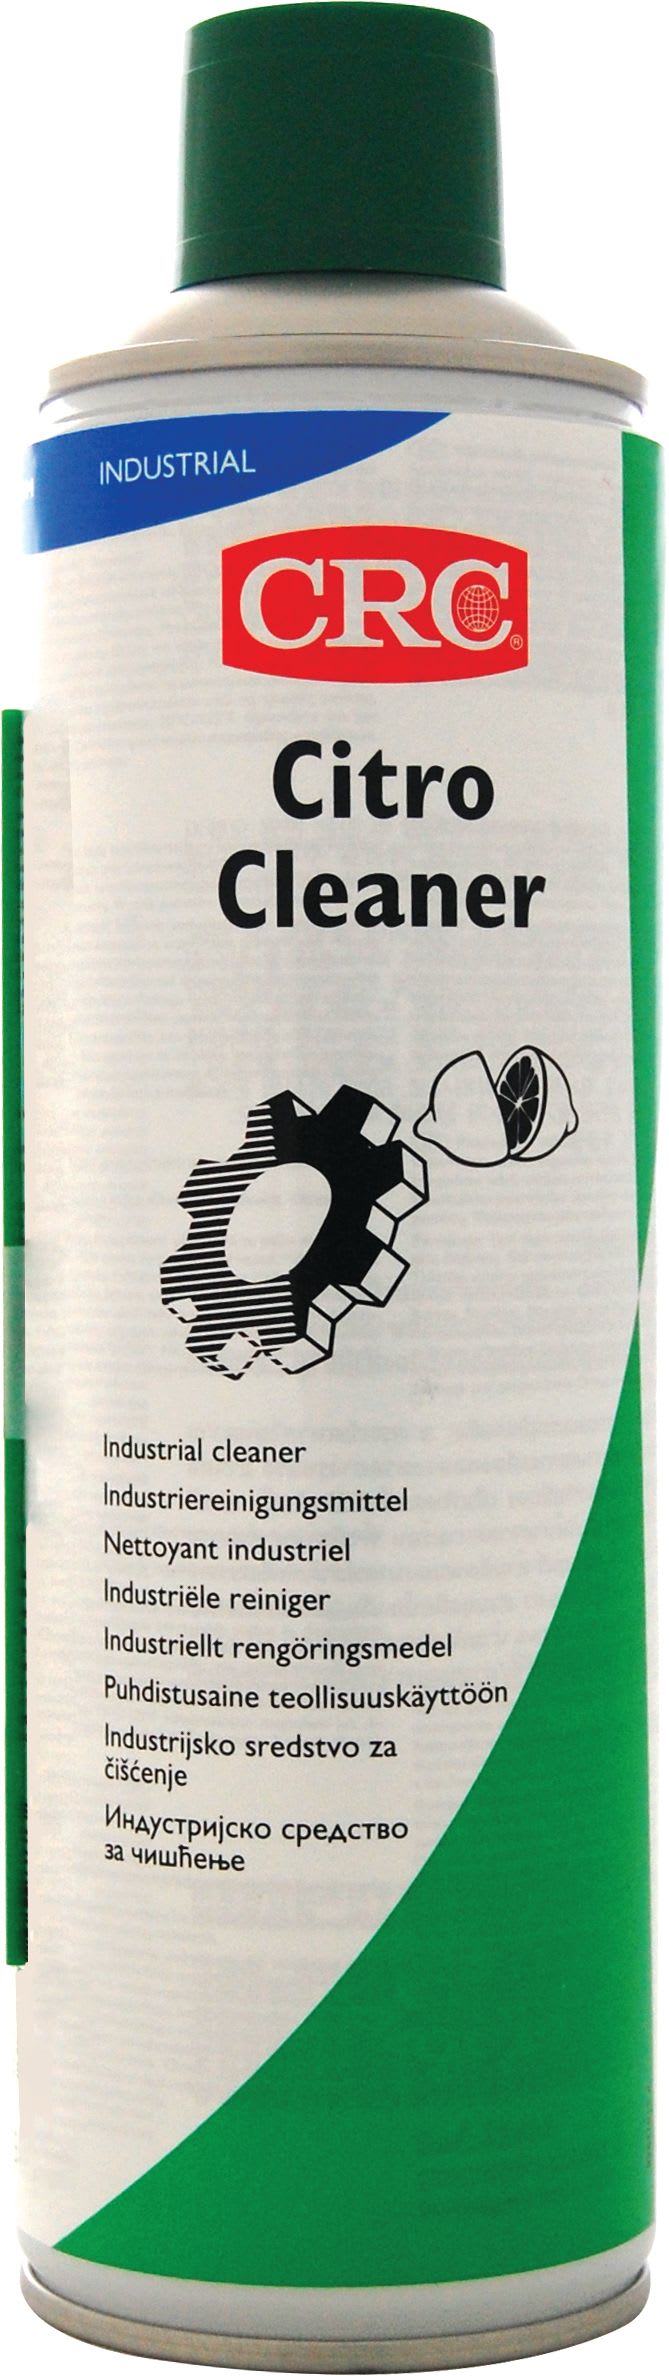 Kf - Citro Cleaner 5 L